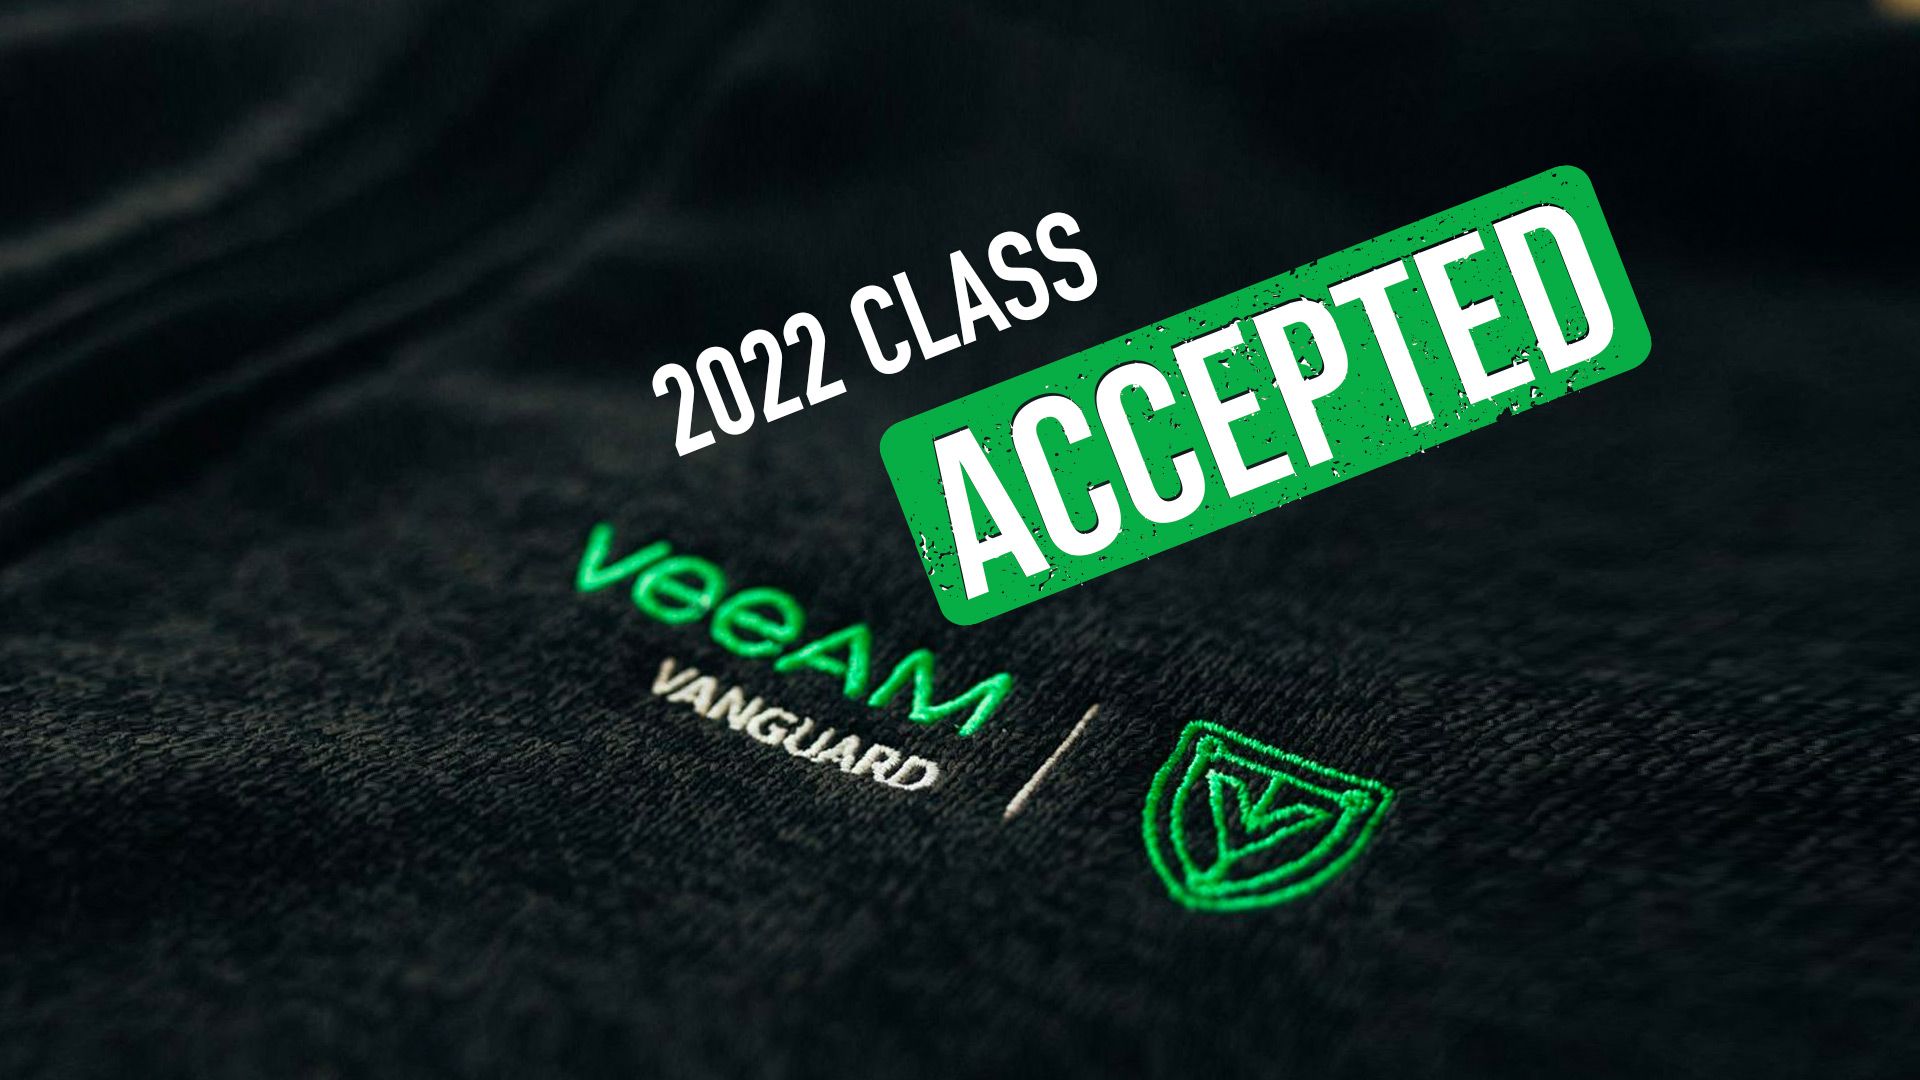 I am a Veeam Vanguard again in 2022